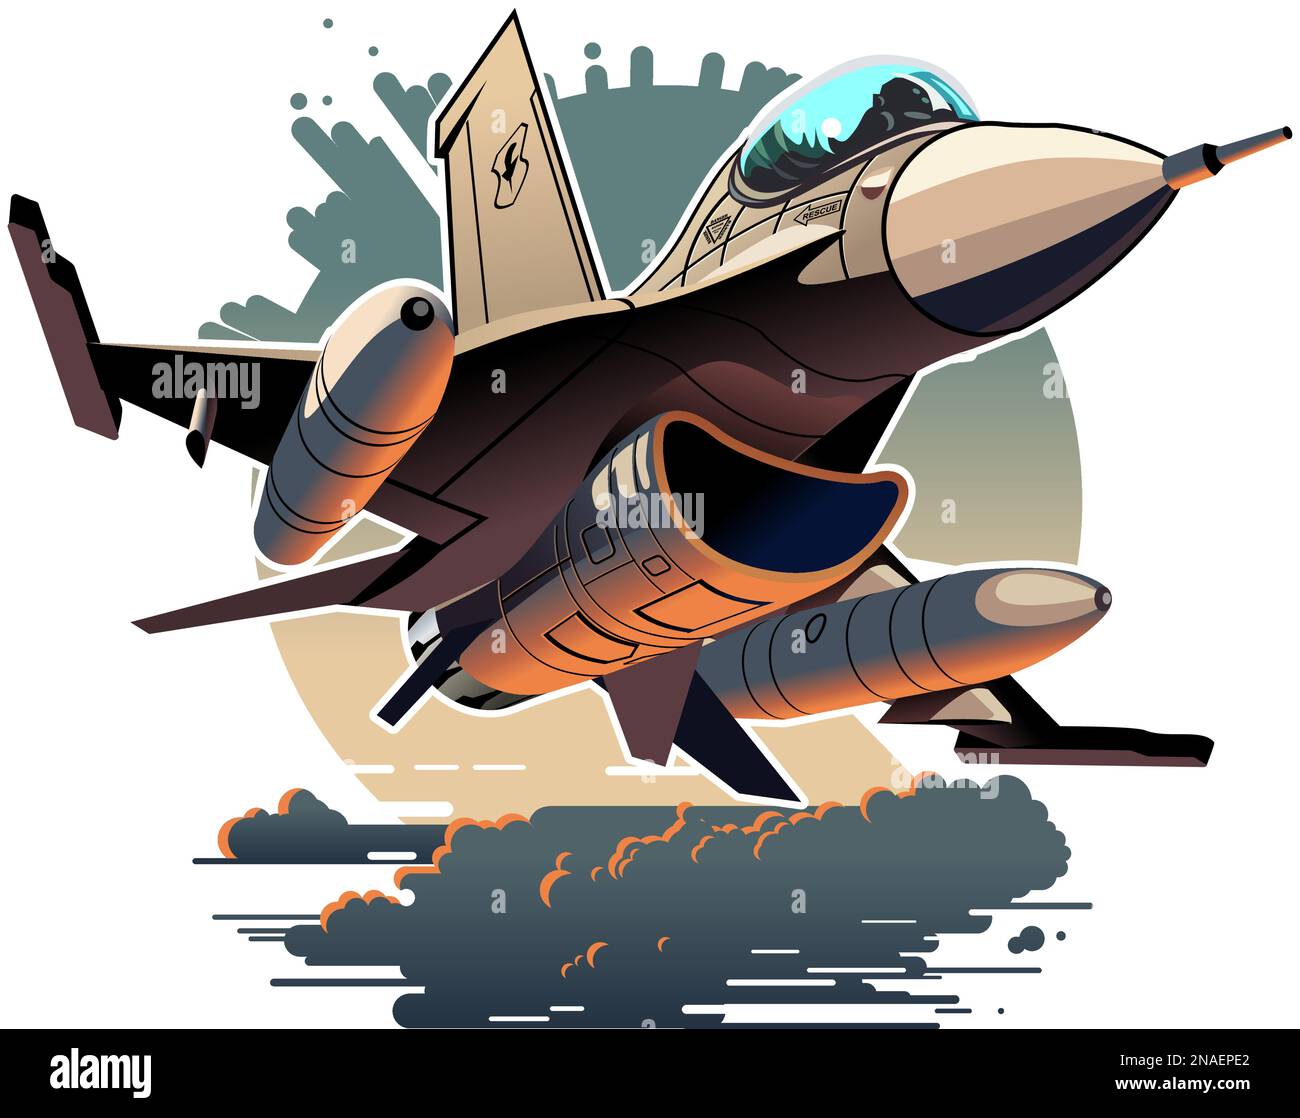 Vettore Cartoon militare Jet Fighter aereo. Formato vettoriale EPS-10 disponibile separato da gruppi e livelli per una facile modifica Illustrazione Vettoriale